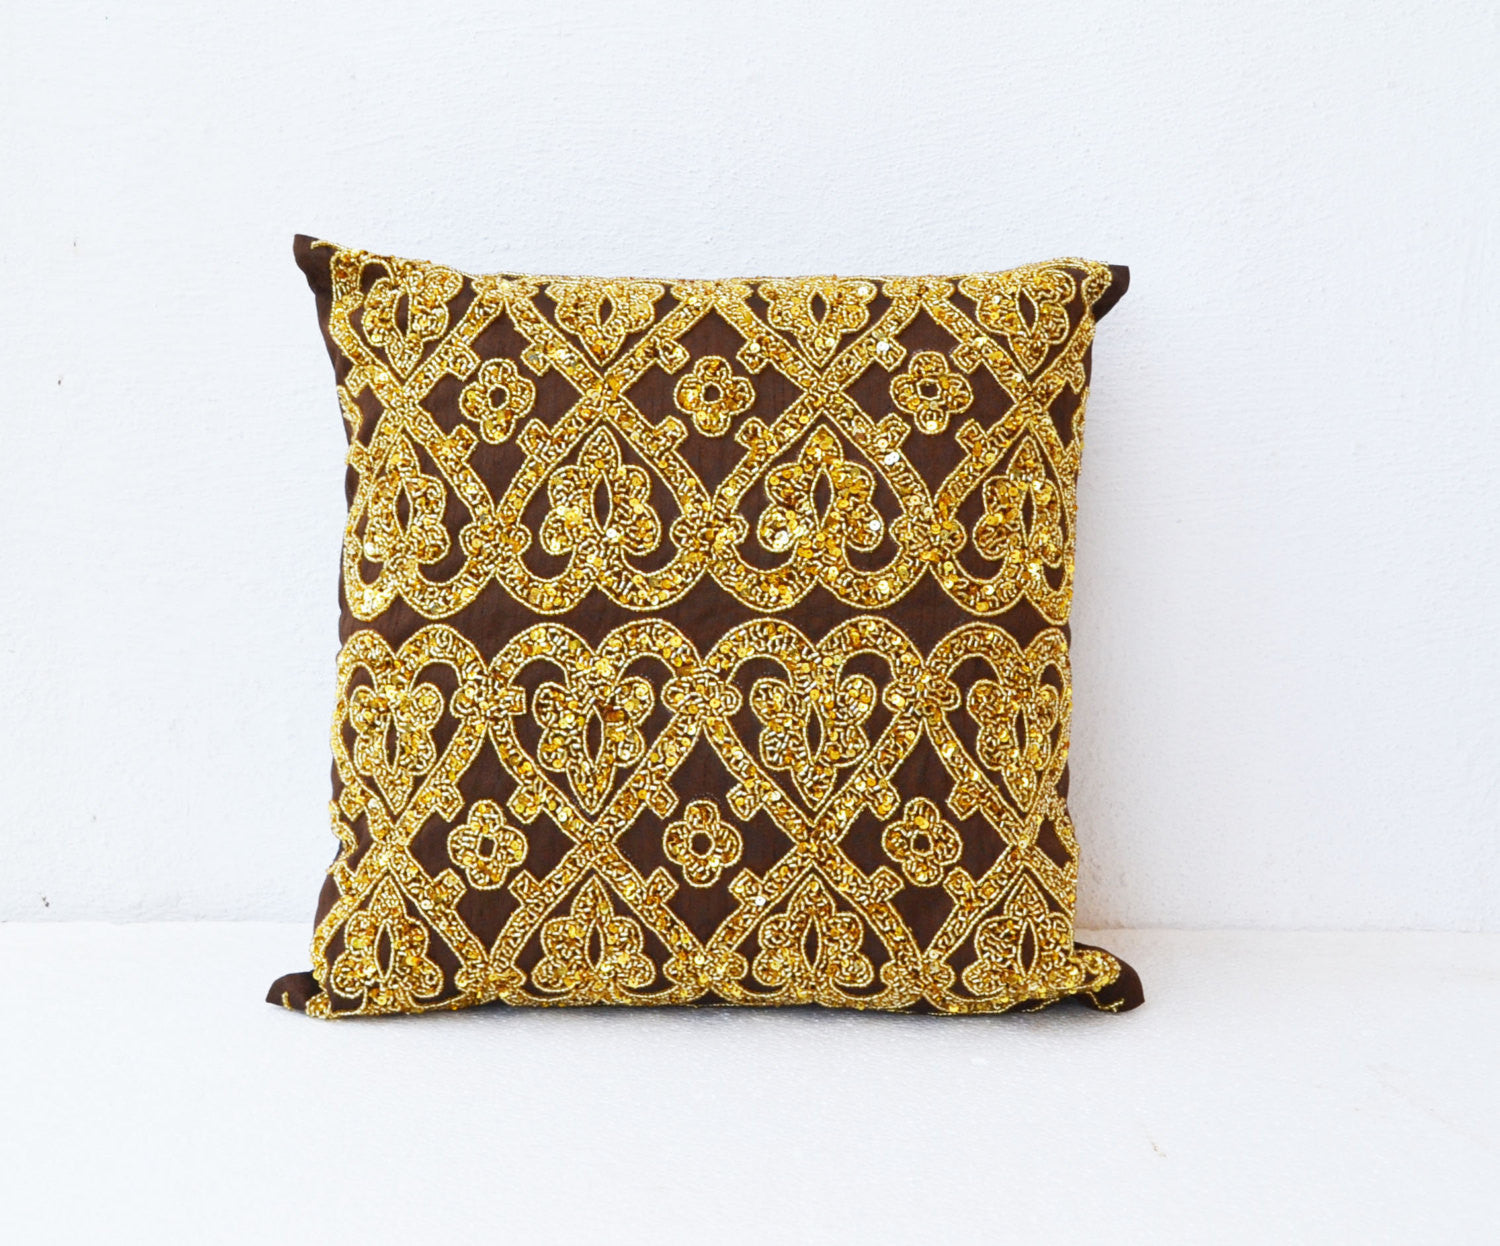 Handmade brown gold silk throw pillow with glitter